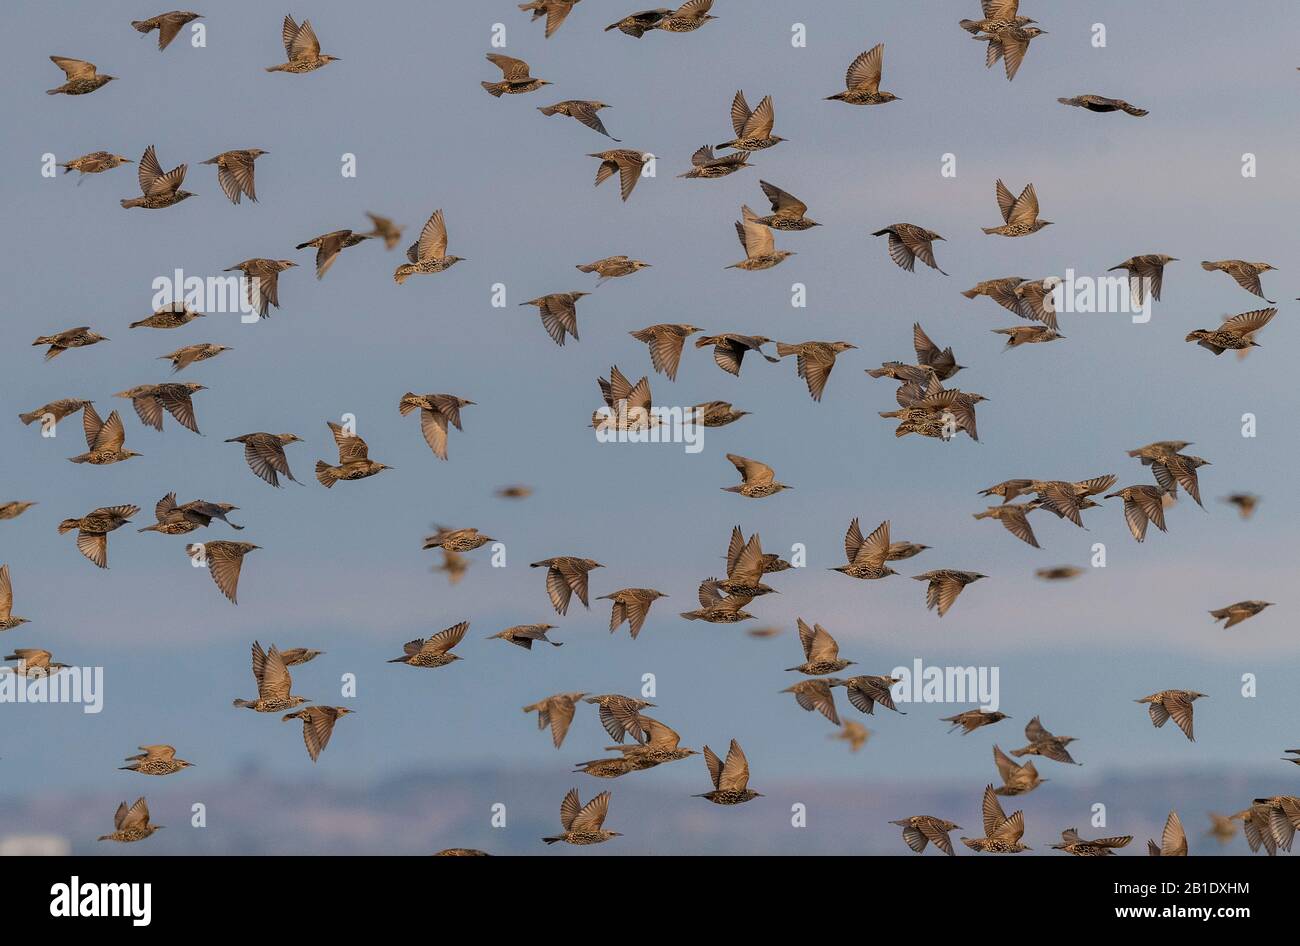 Starlings, Sturnus vulgaris, in flocks prior to evening roosting. Stock Photo